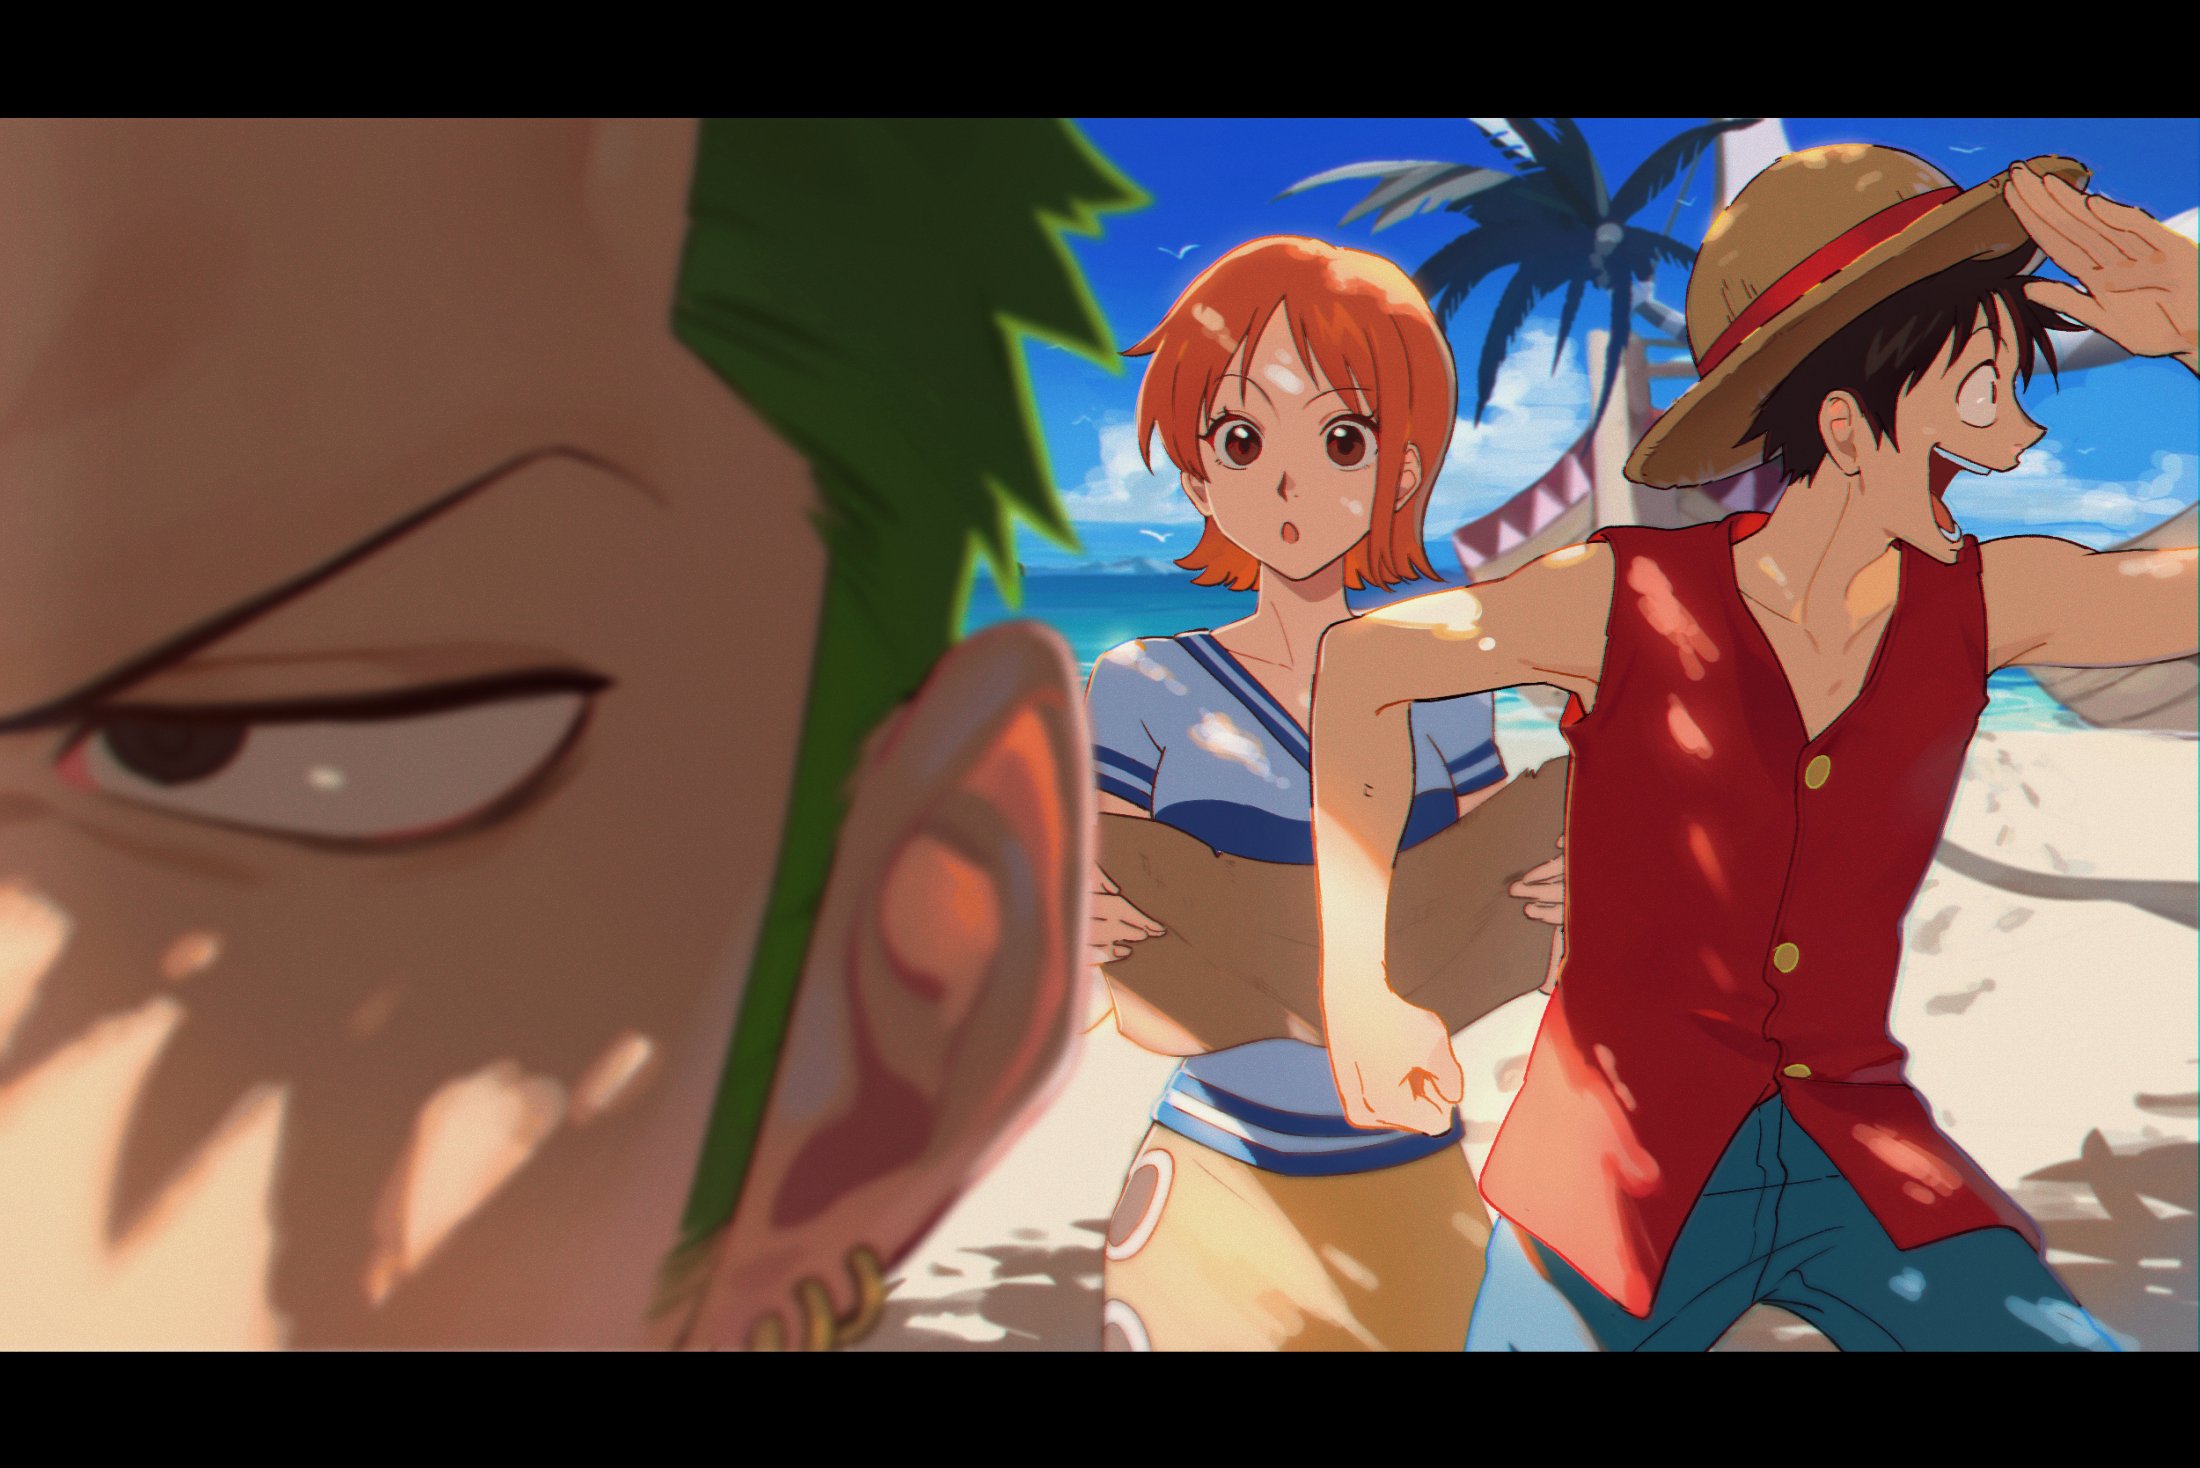 Nami - One Piece by Hokekiyo